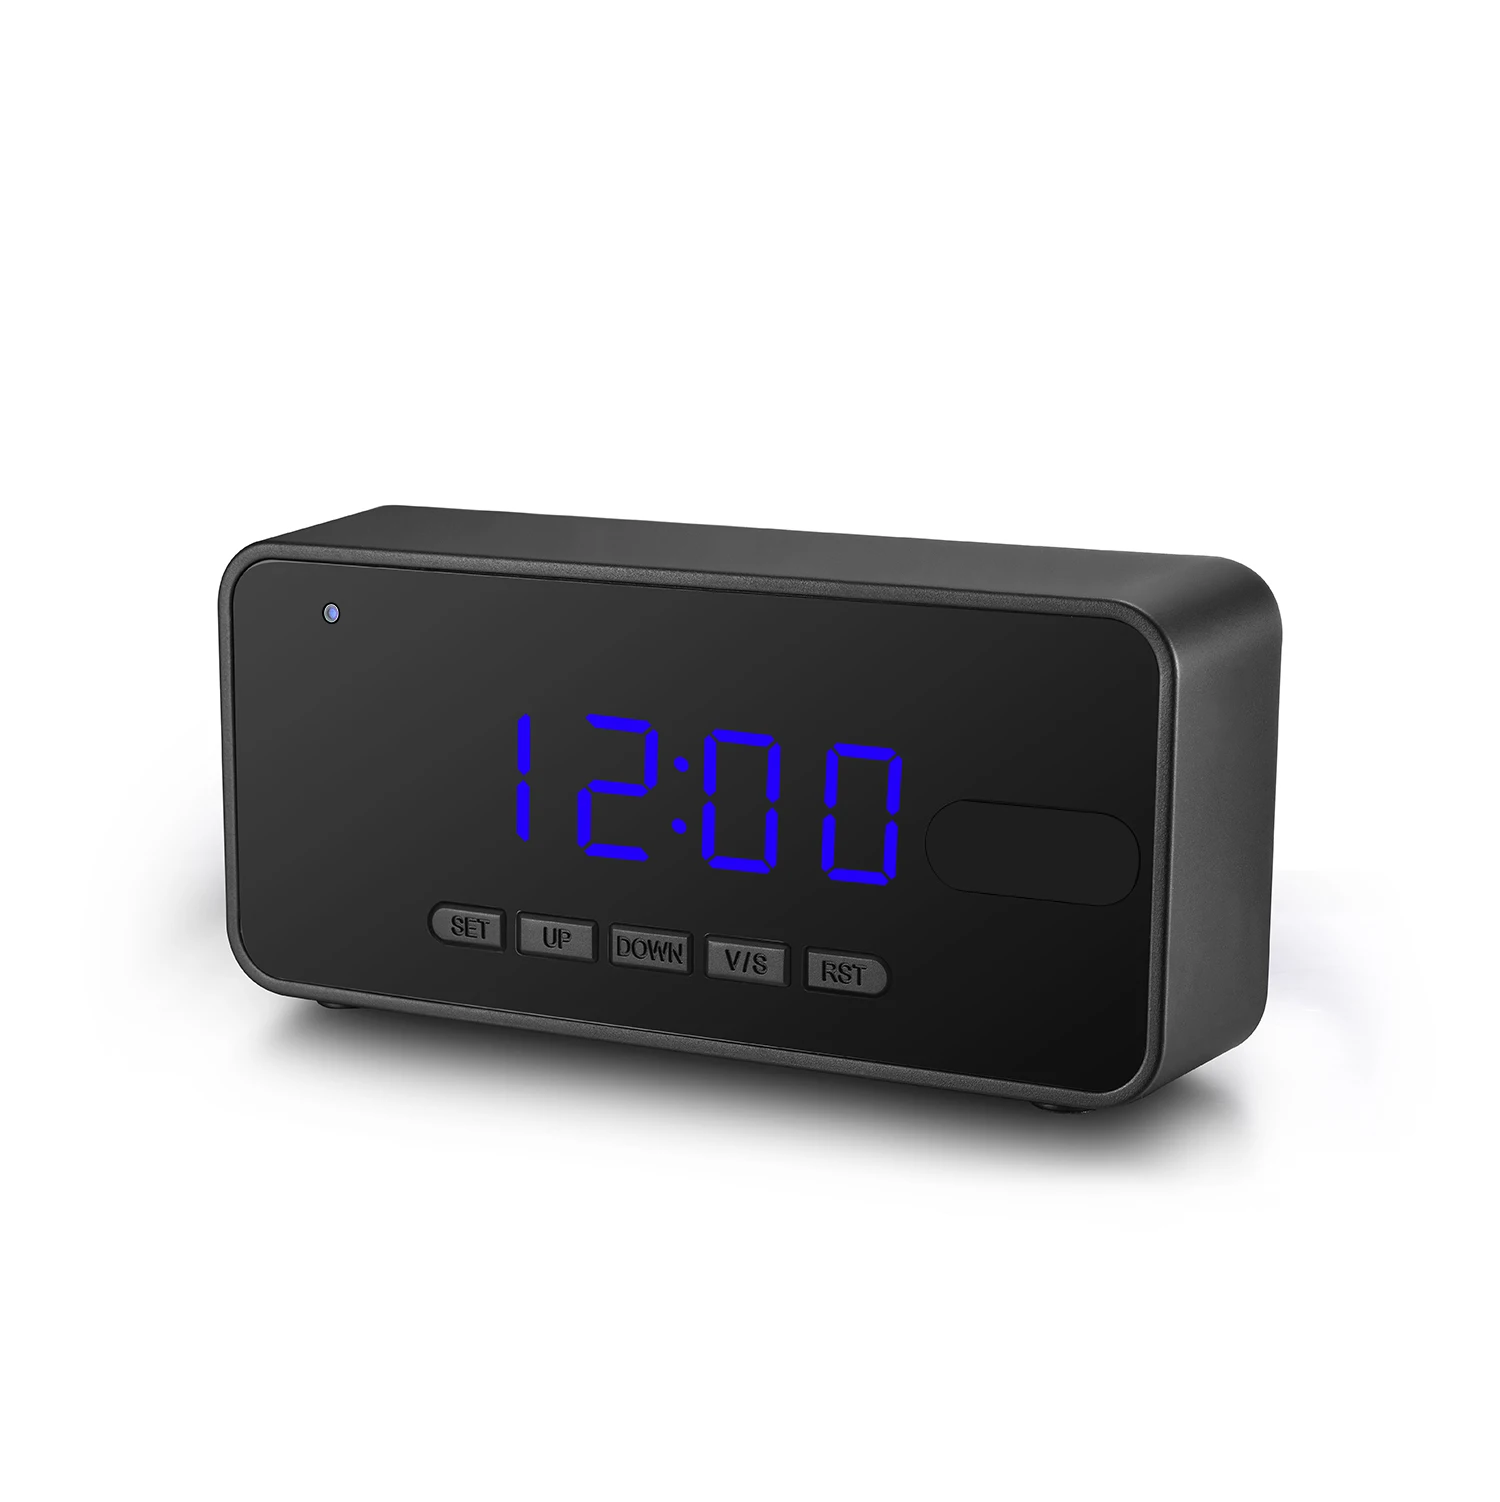 Мини камера часы. Мини камера будильник 1080 WIFI. Часы с вай-фай камерой Philips. Mini Alarm Clock hidden Camera.